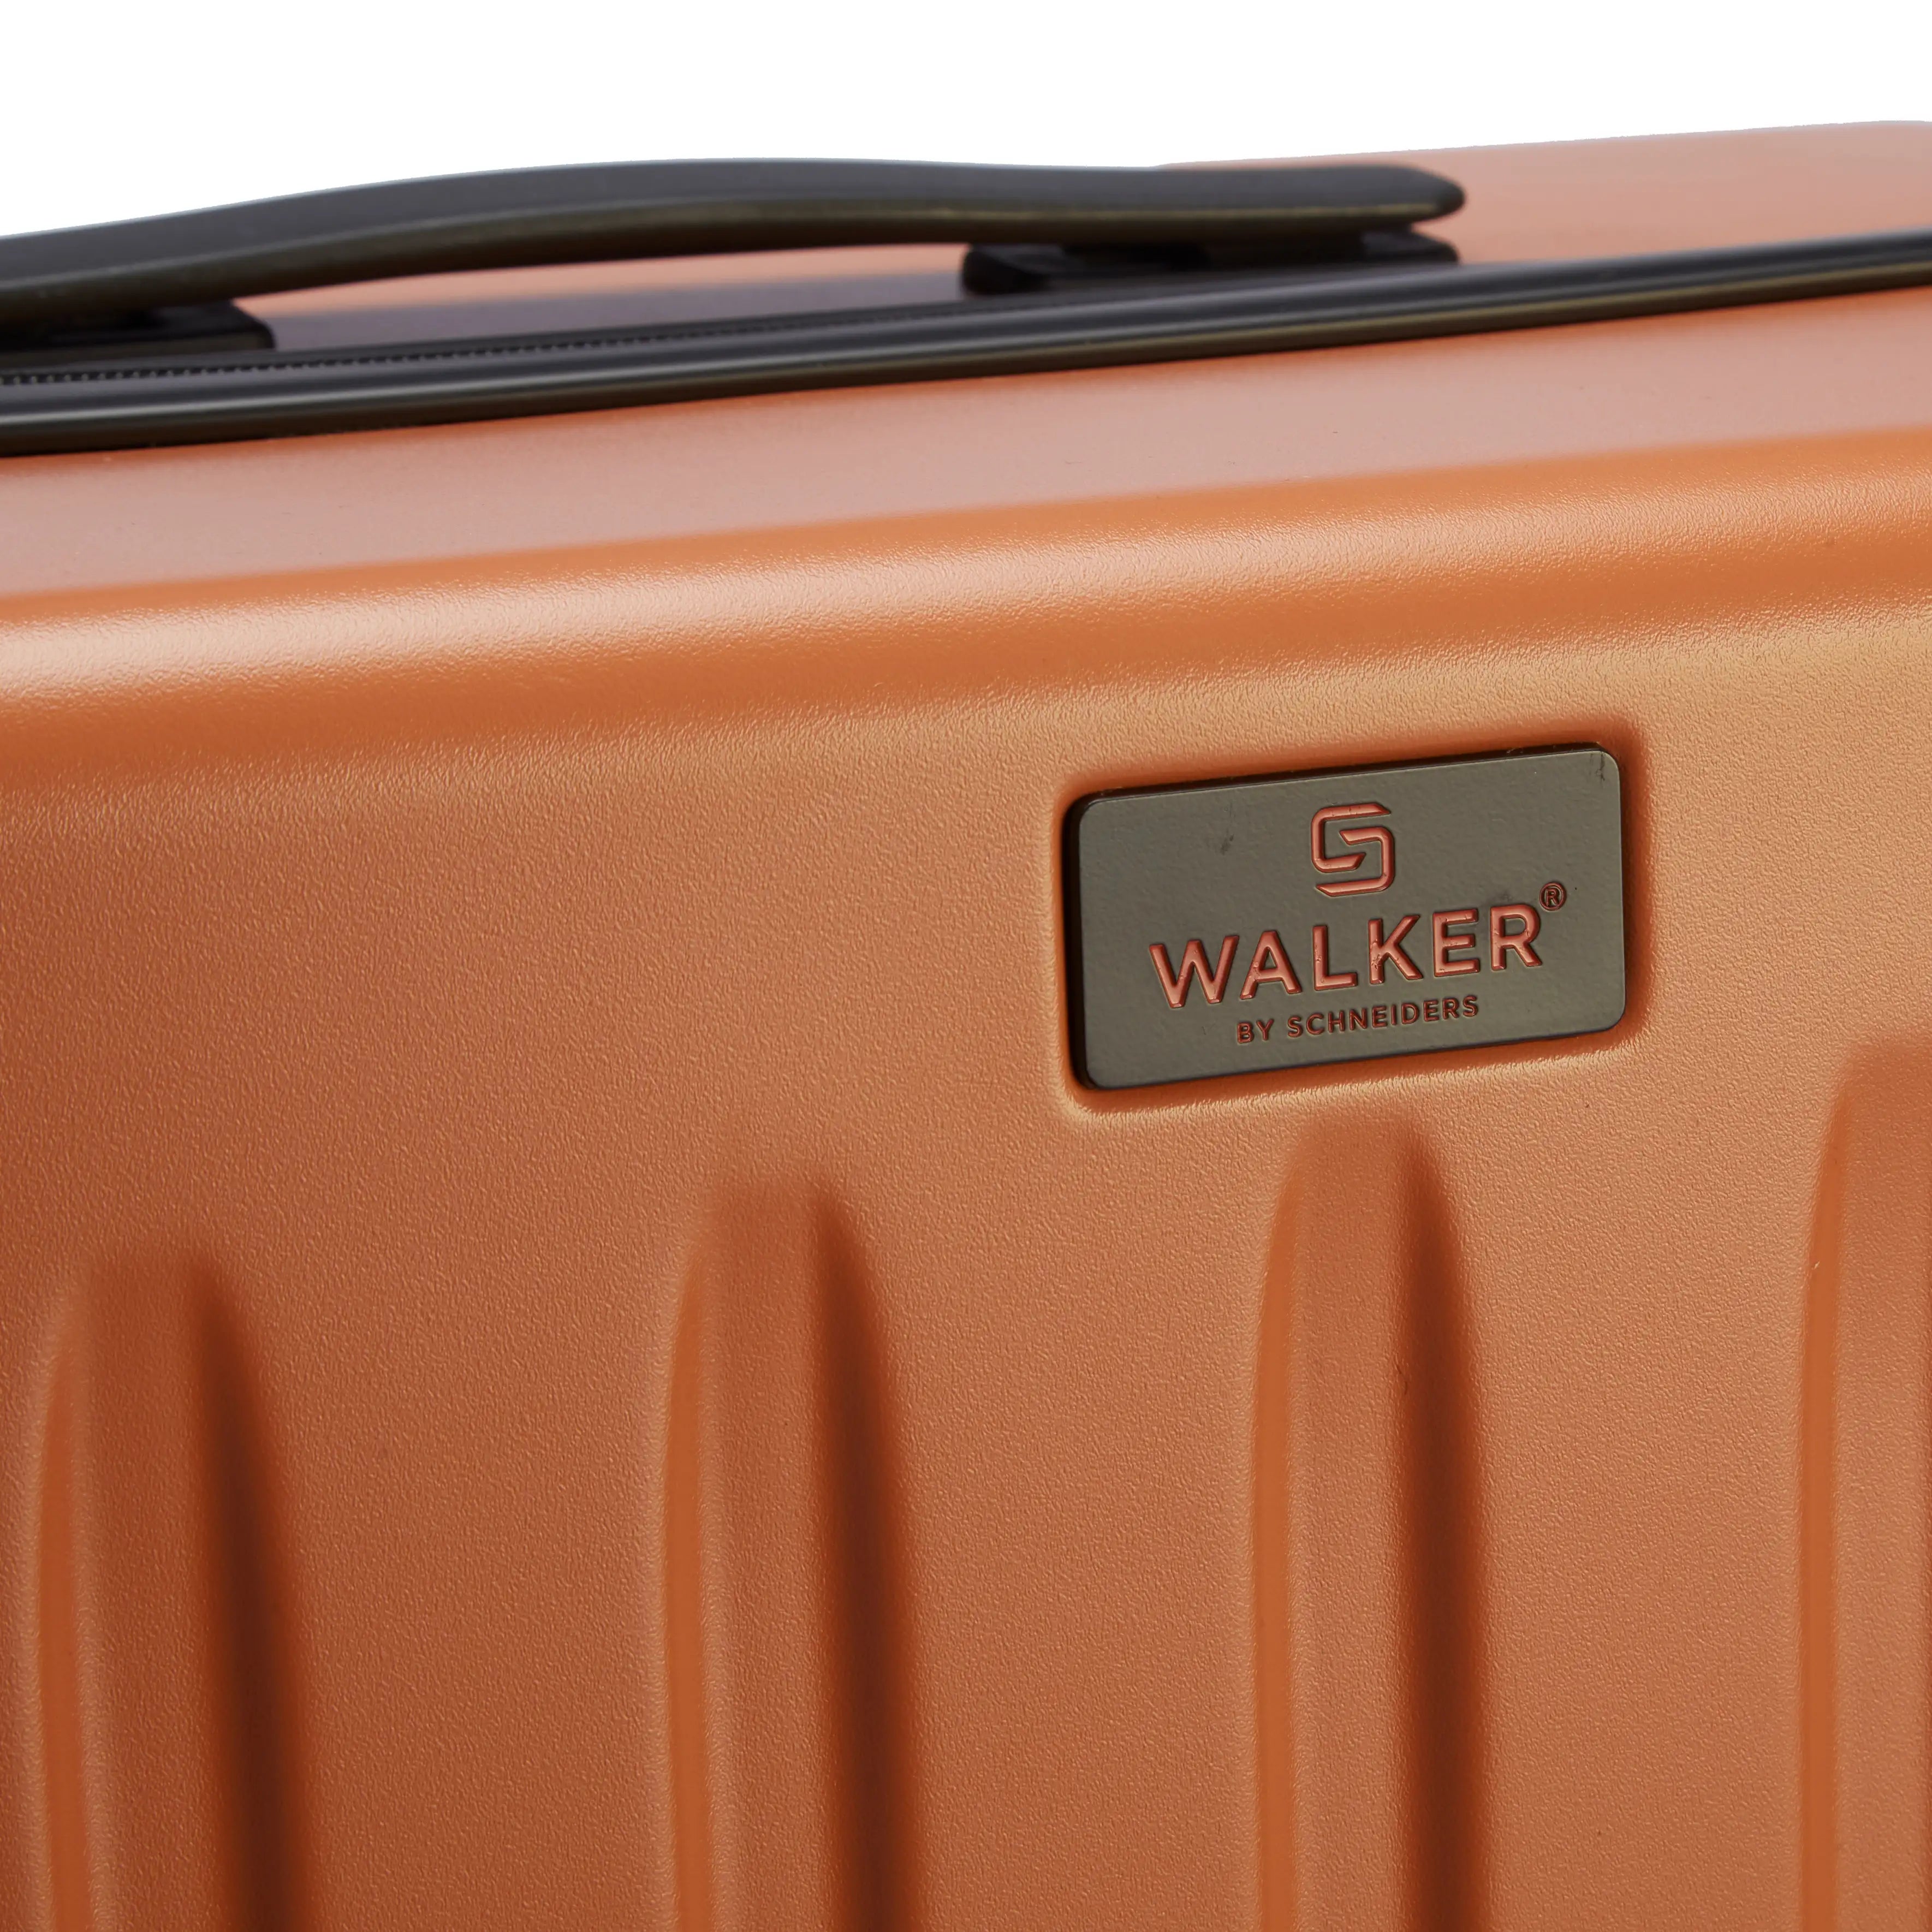 Walker Florida set de valises de voyage 3 pièces - Noix de coco